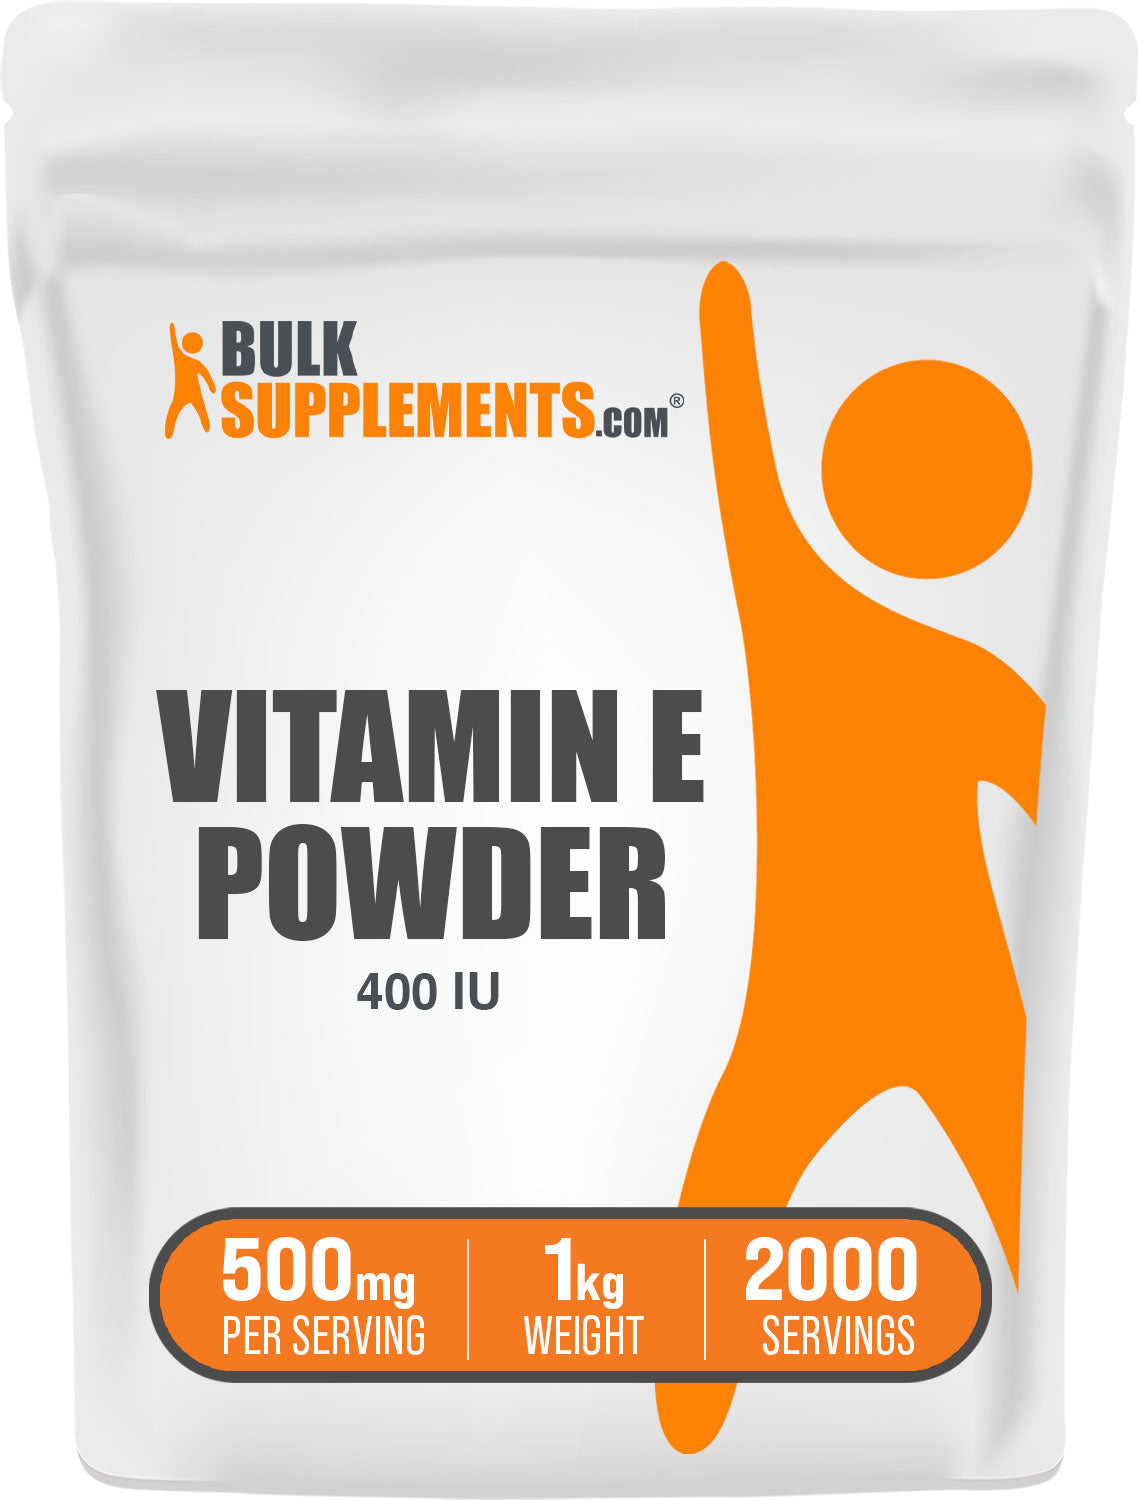  BulkSupplements.com Vitamin E 400 IU Powder 1kg bag